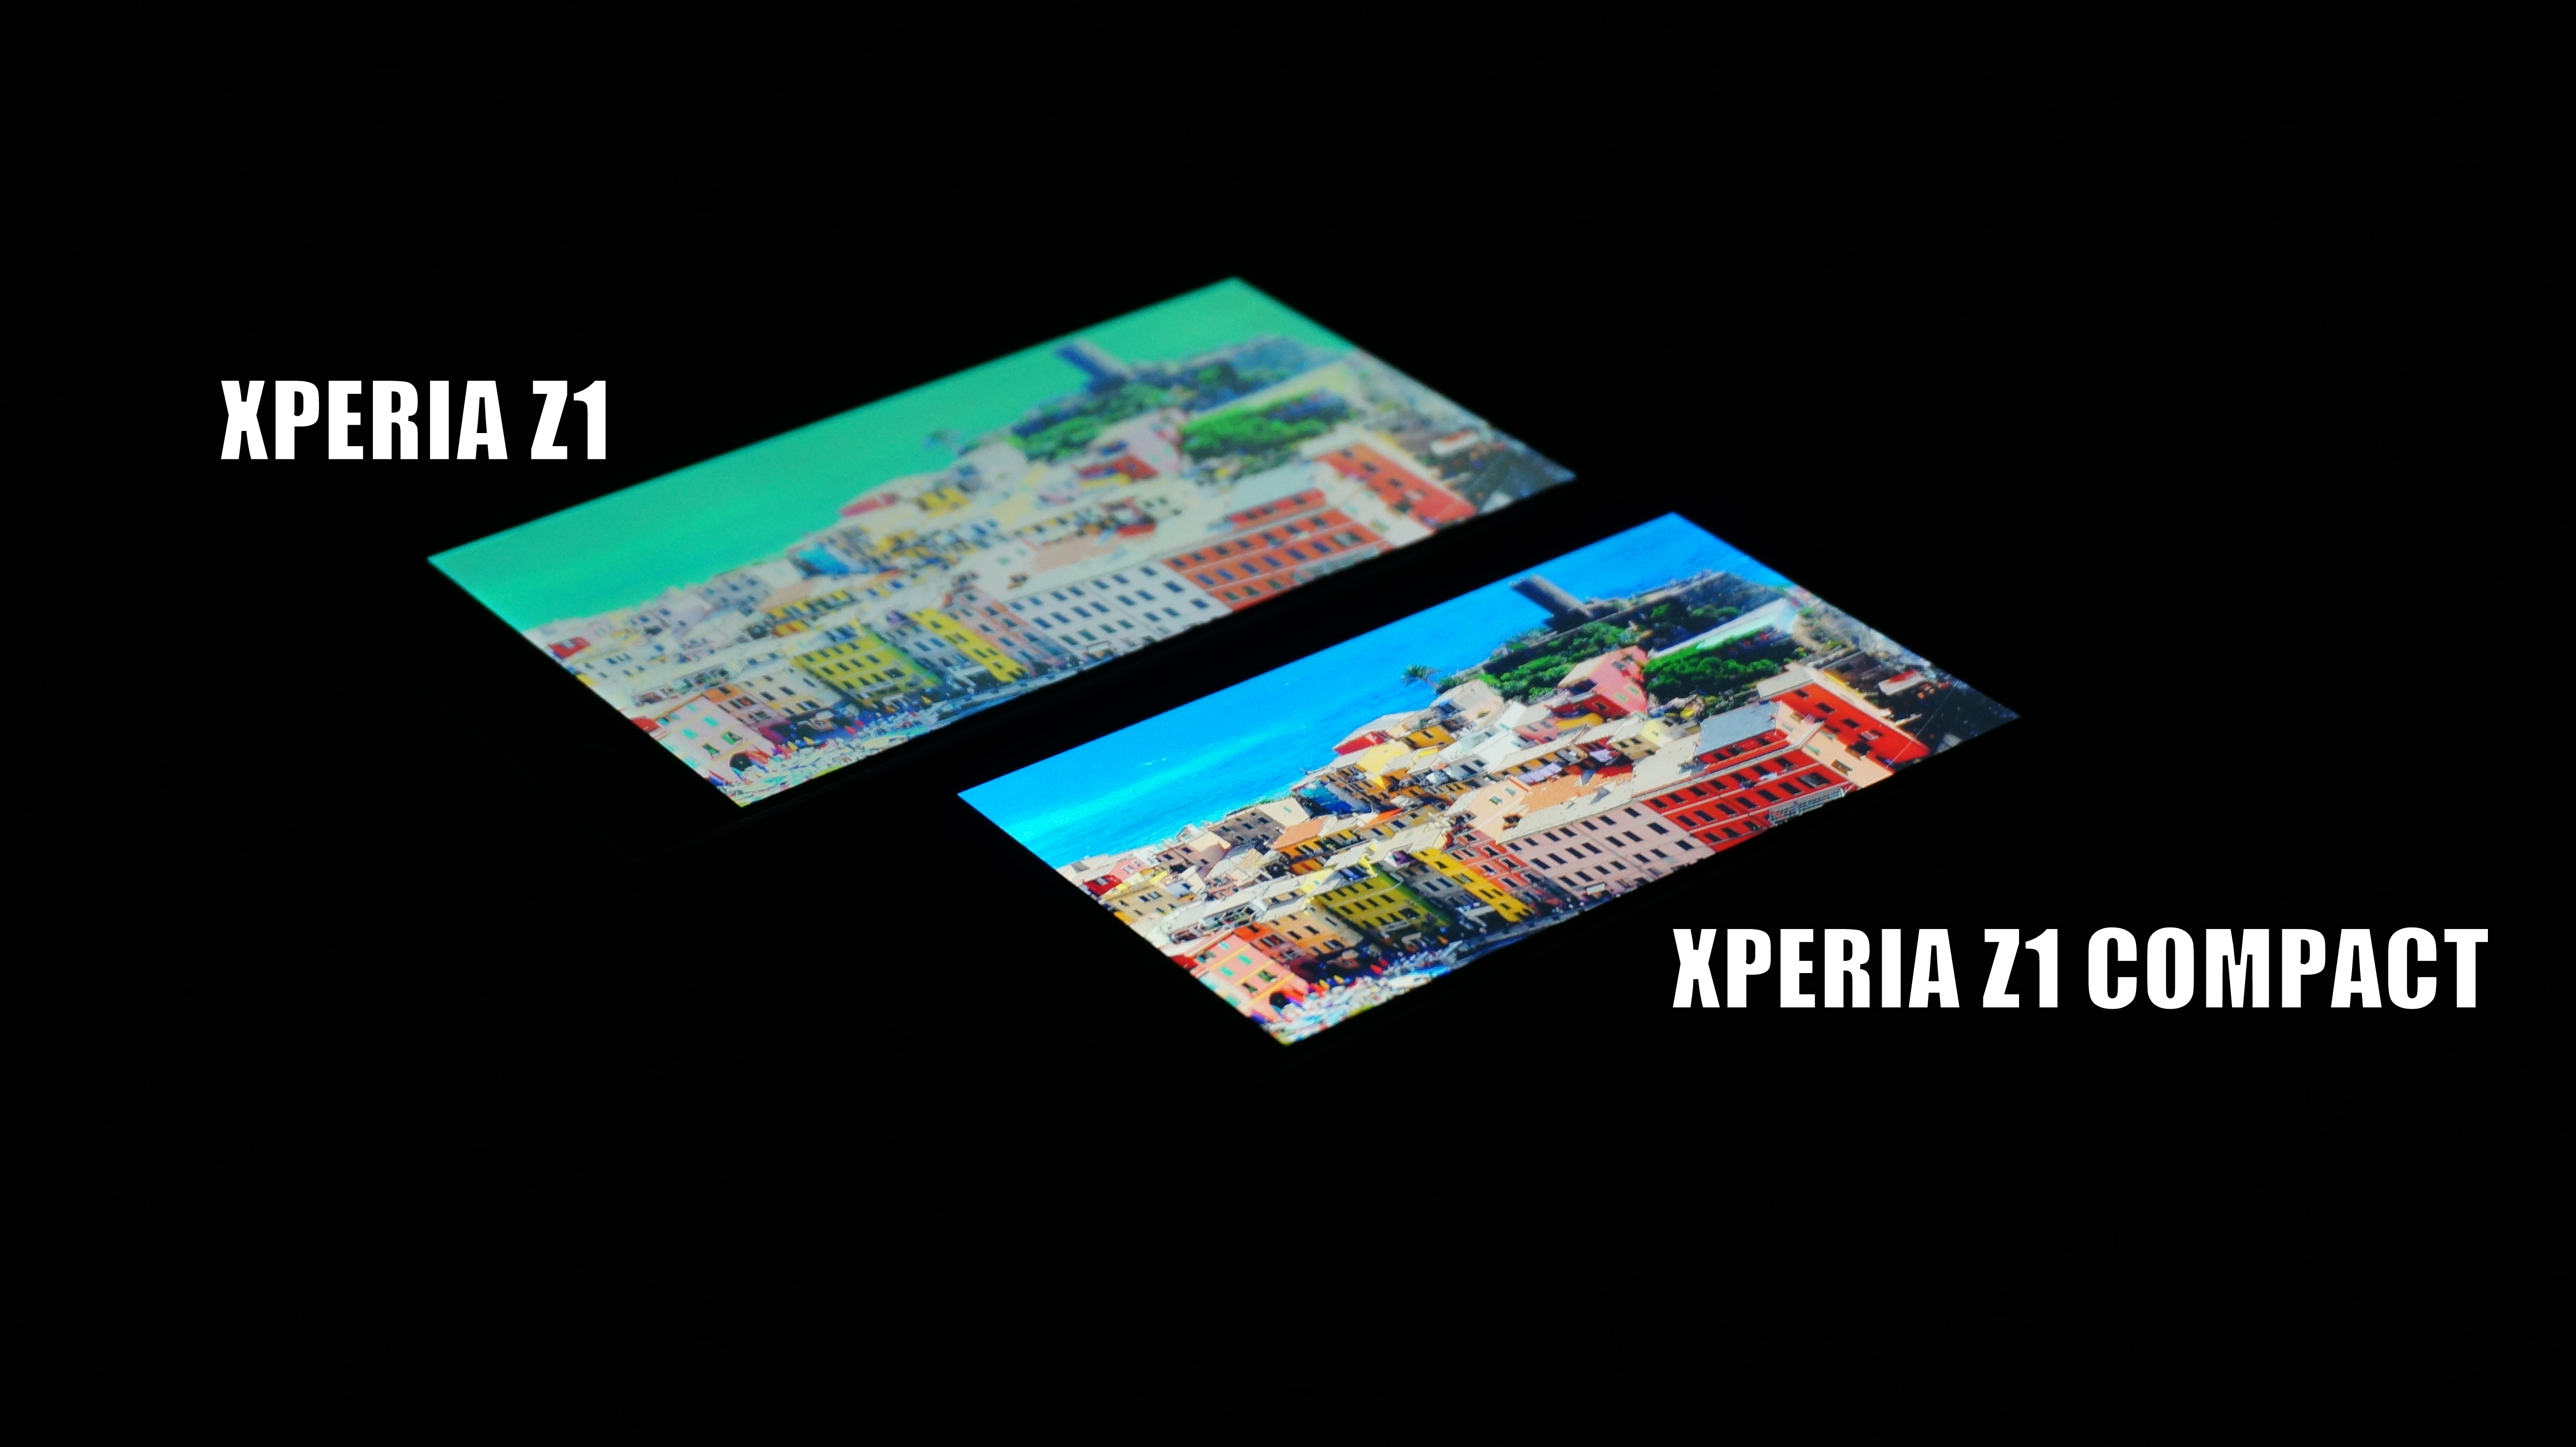 Xperia Z1 vs Xperia Z1 Compact Display Screen Comparison